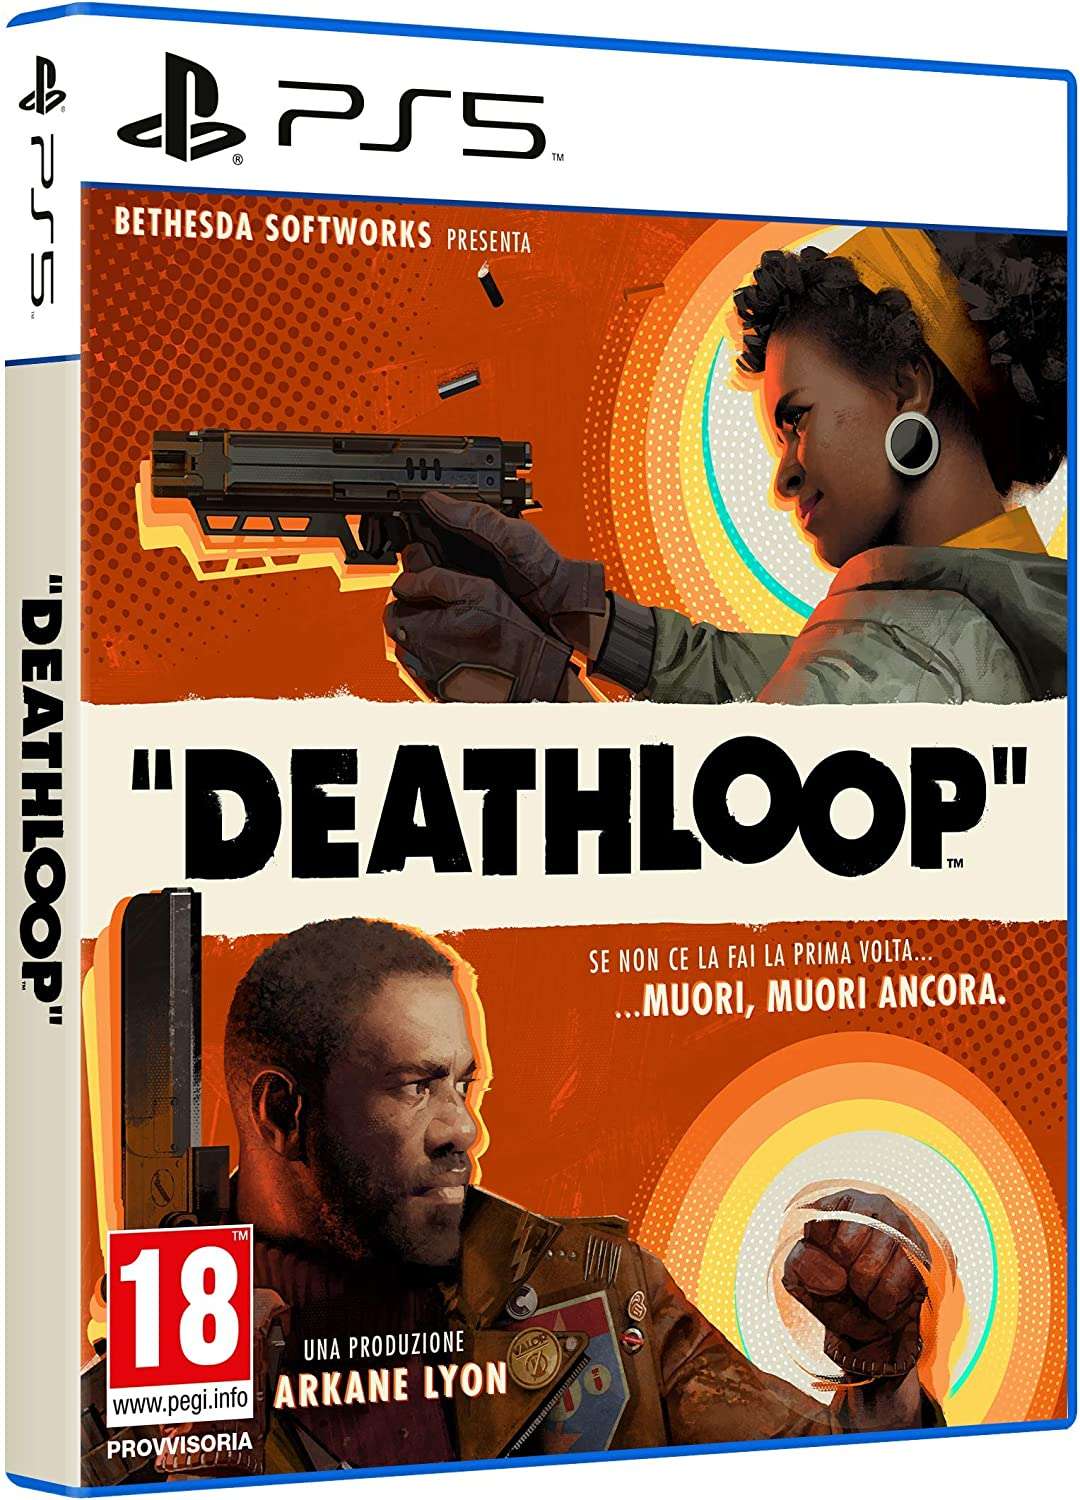 giochi ps5: Deathloop